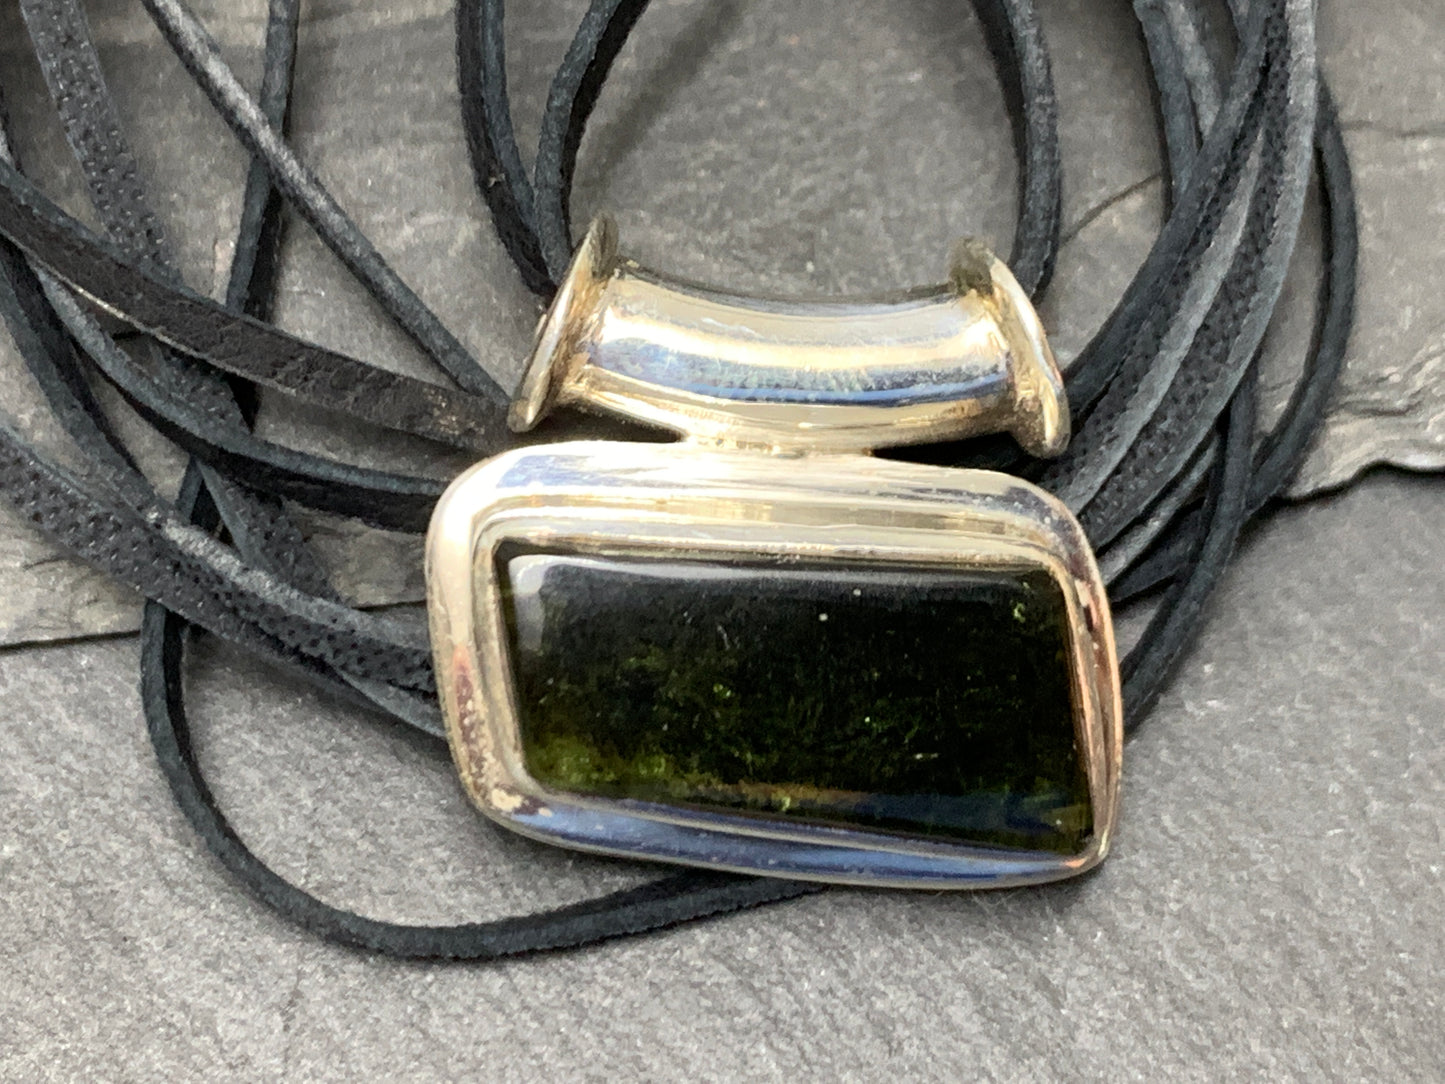 Free Form Moldavite pendant with tube bail ( polished Moldavite )